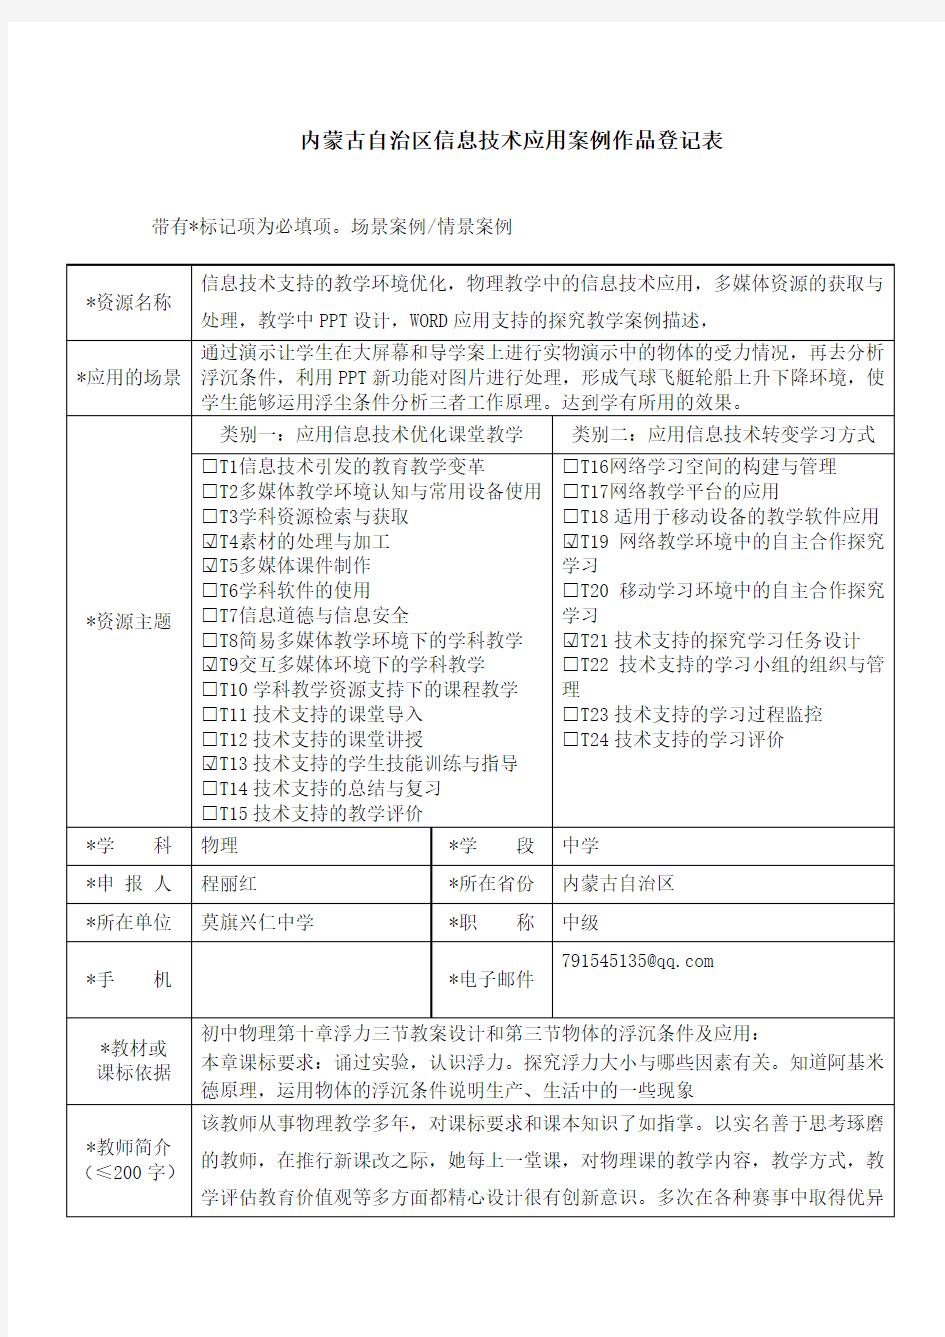 内蒙古自治区信息技术应用案例作品登记表